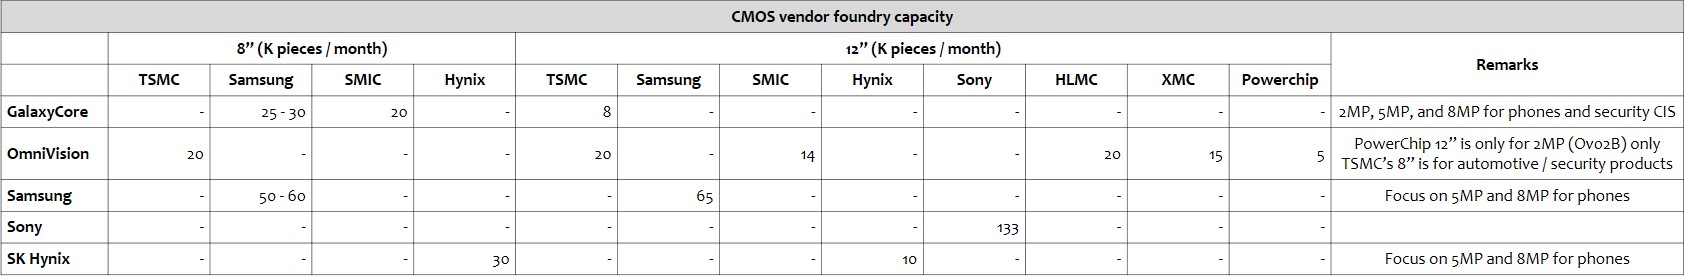 omdia-cmos-vendor-foundry-capacity-1.jpg